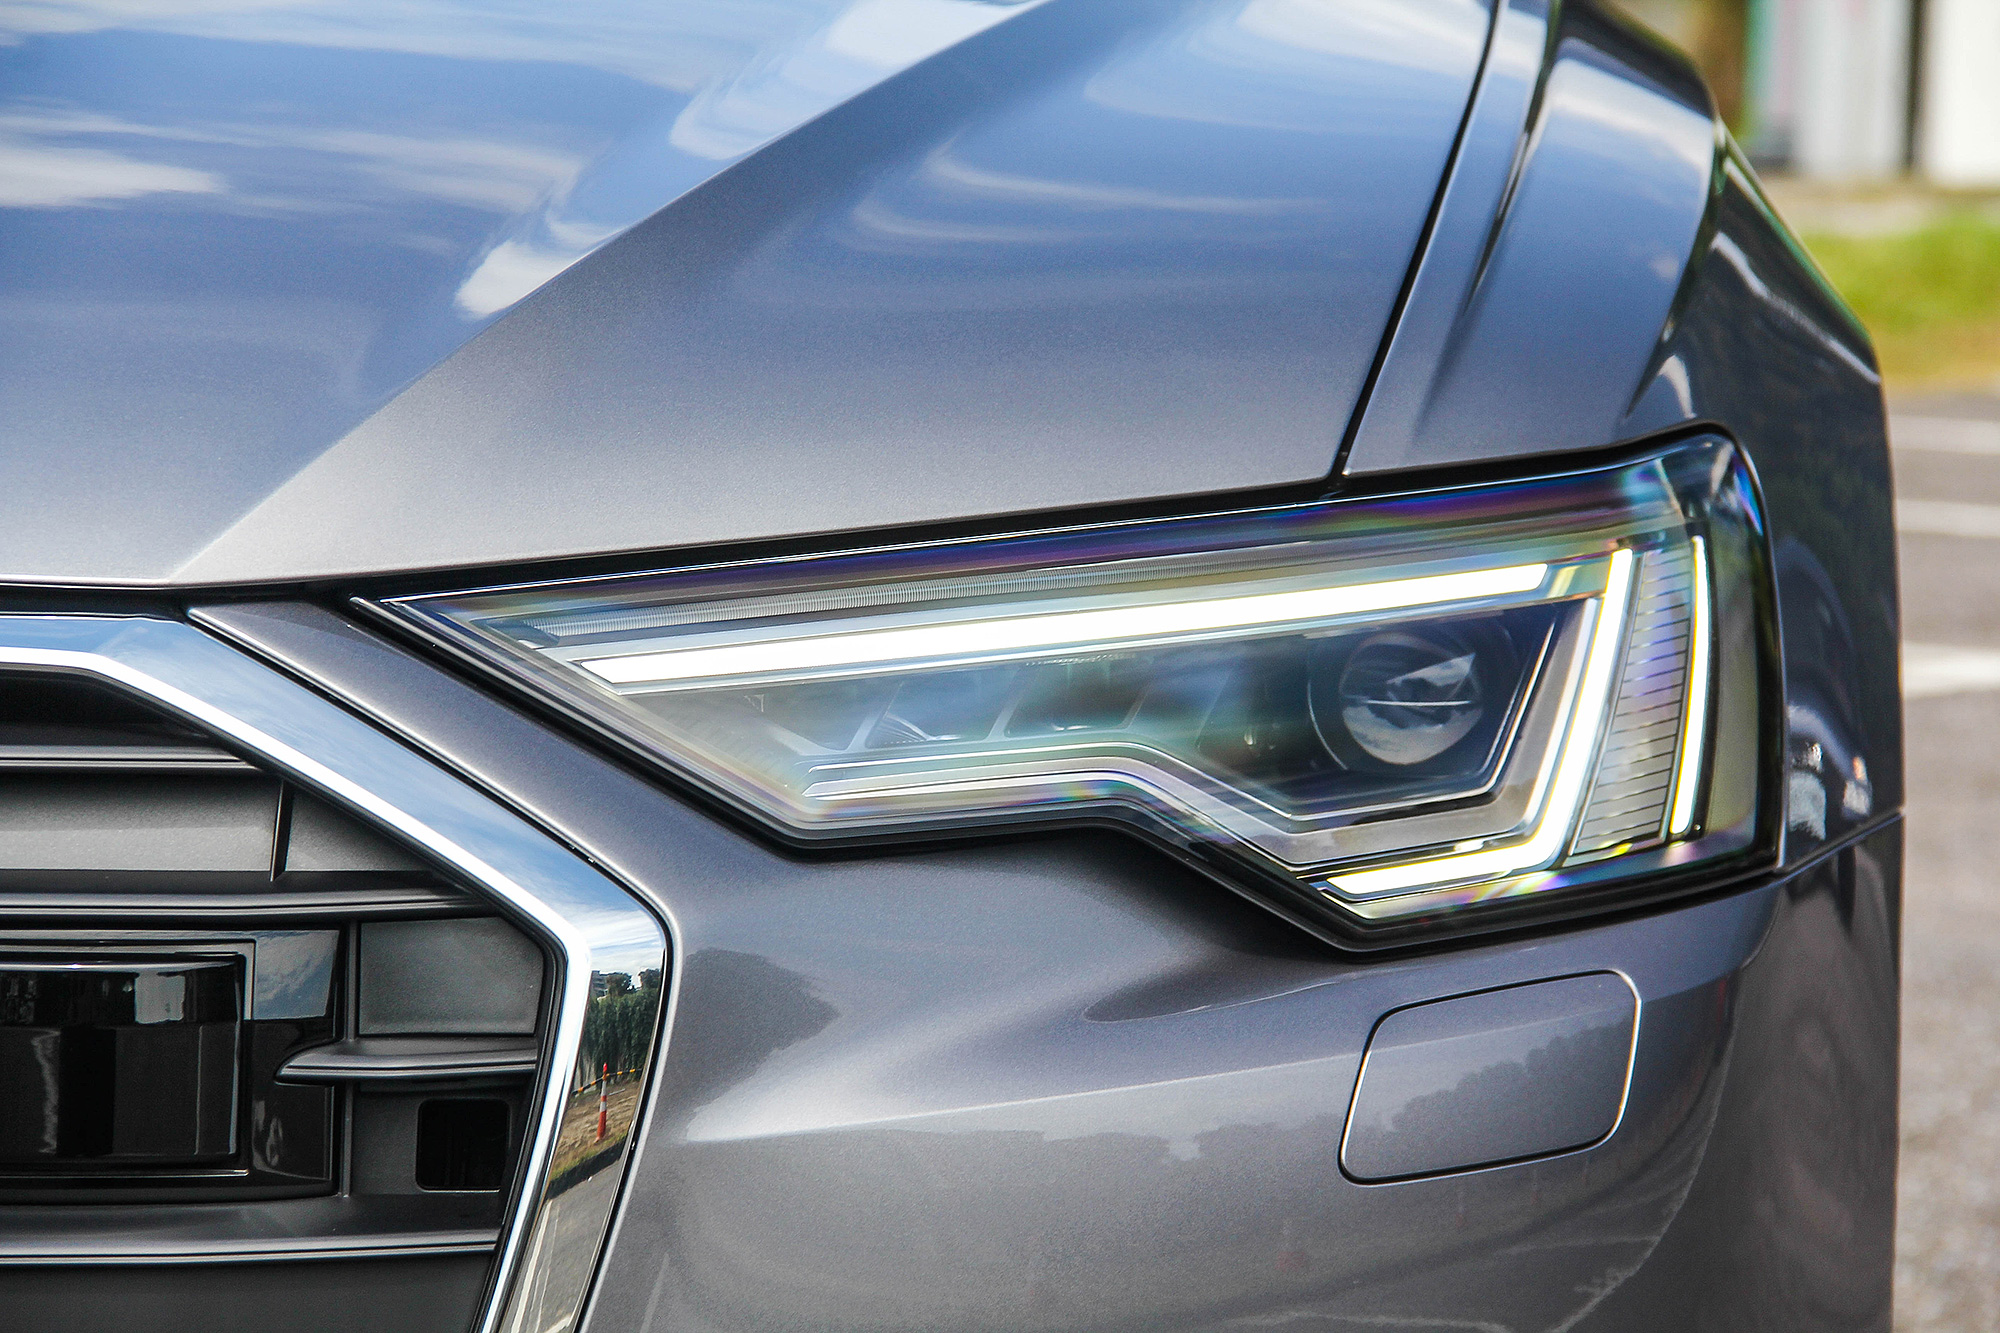 Matrix LED 矩陣式 LED 頭燈為 Premium 車型以上的標準配備。